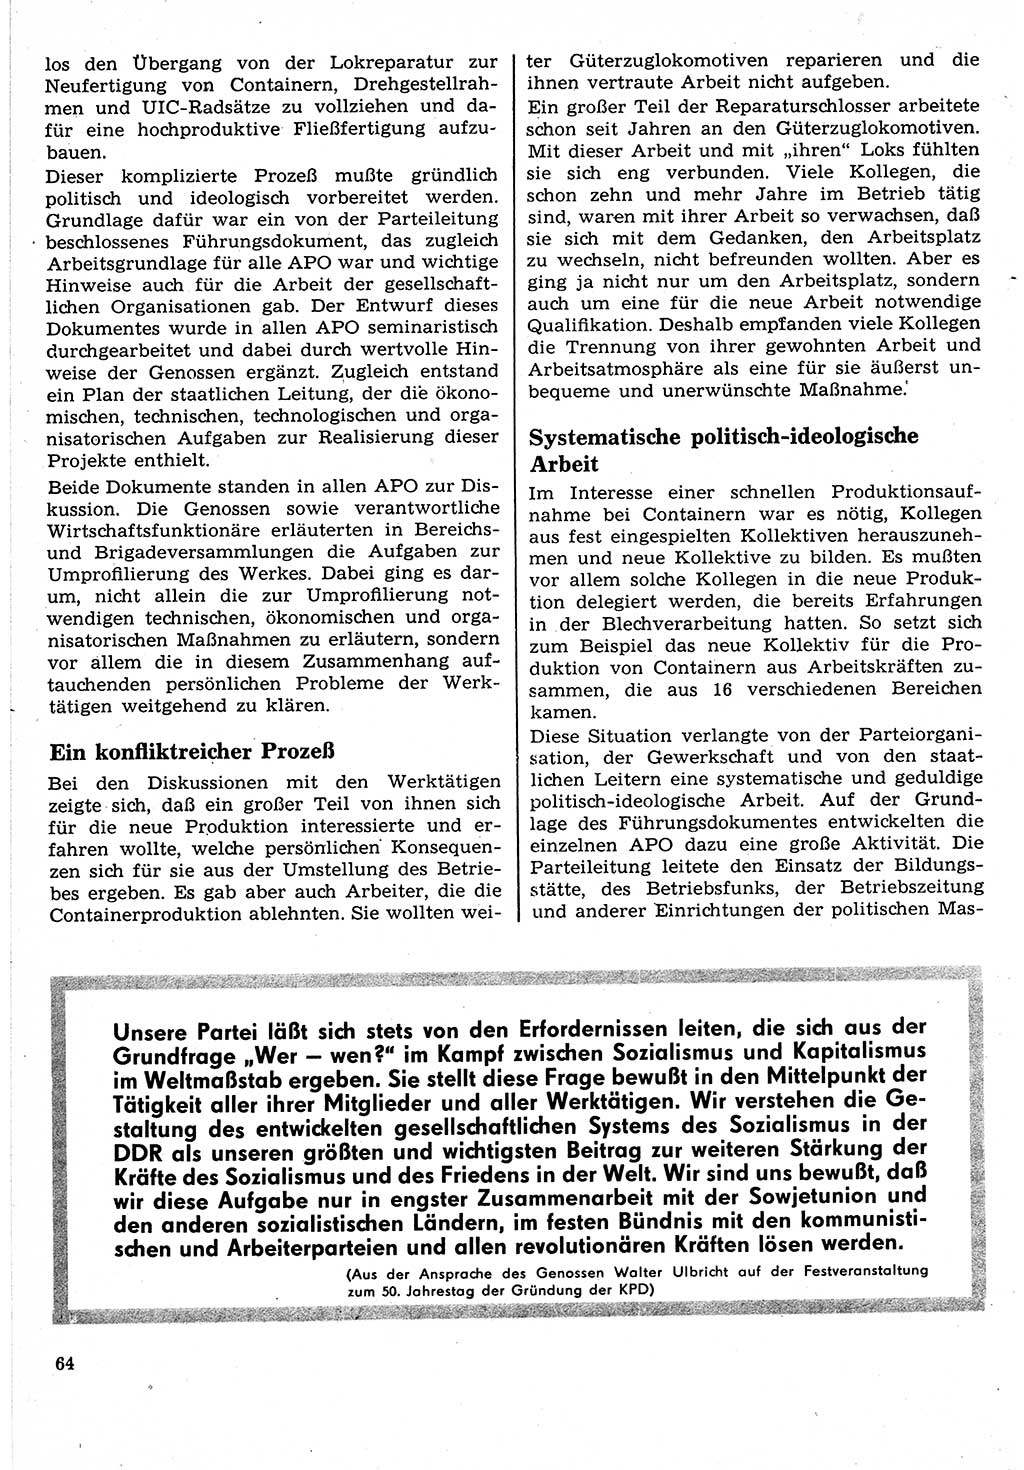 Neuer Weg (NW), Organ des Zentralkomitees (ZK) der SED (Sozialistische Einheitspartei Deutschlands) für Fragen des Parteilebens, 24. Jahrgang [Deutsche Demokratische Republik (DDR)] 1969, Seite 64 (NW ZK SED DDR 1969, S. 64)